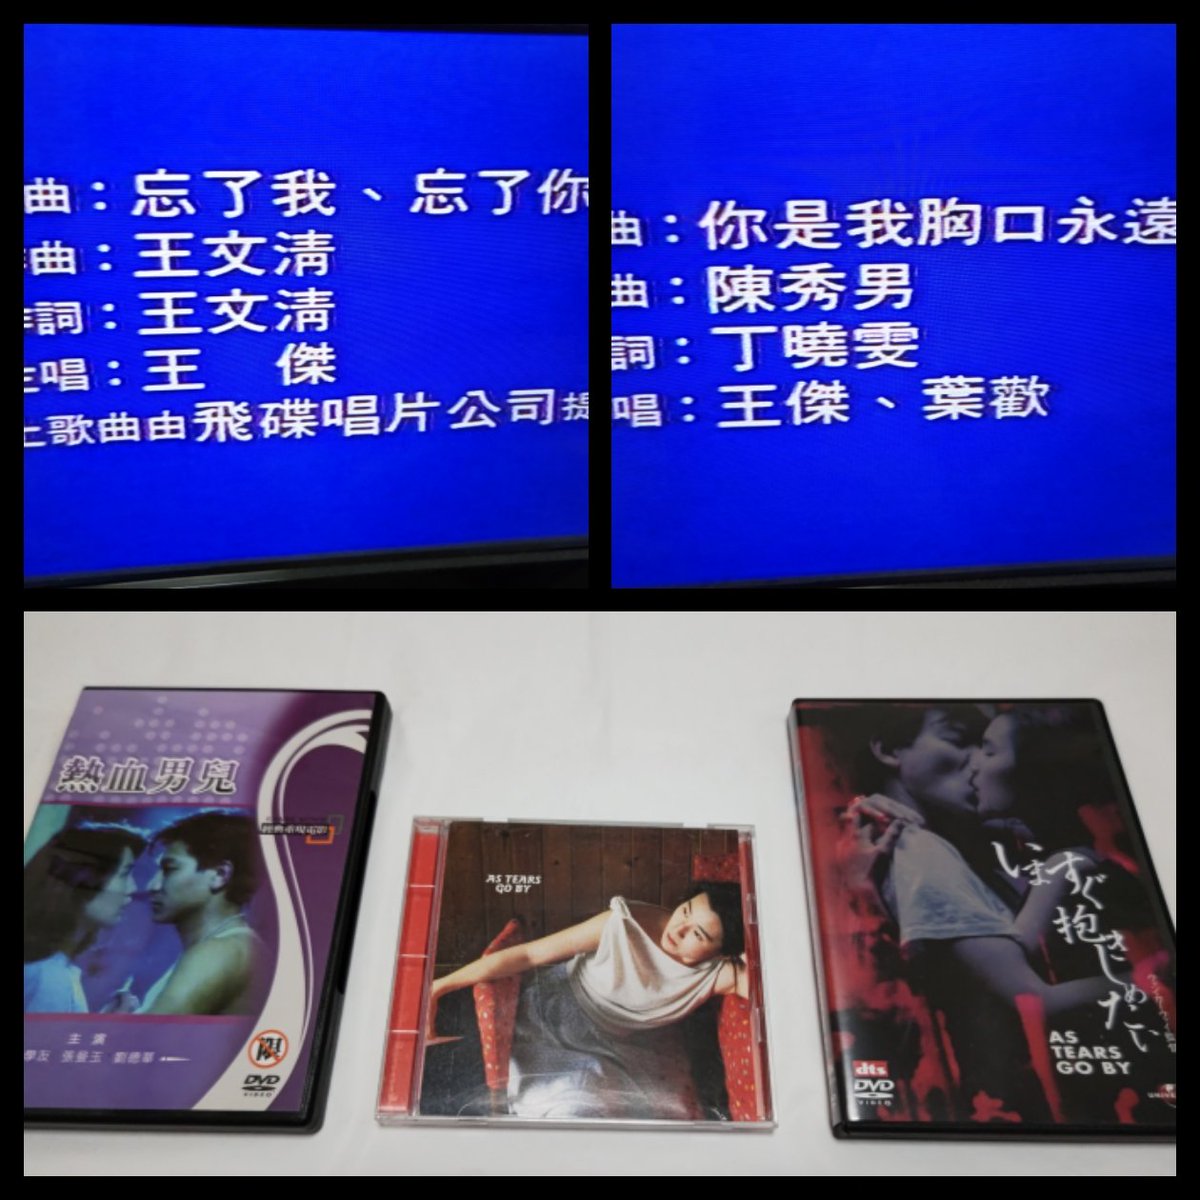 先日プレノン・アッシュ版DVD、台湾版DVDを観たのですが知り合いの方が家のデッキが壊れてて観れないからと右のユニバーサル・ピクチャーズ・ジャパン版DVDを貸してくださいました。